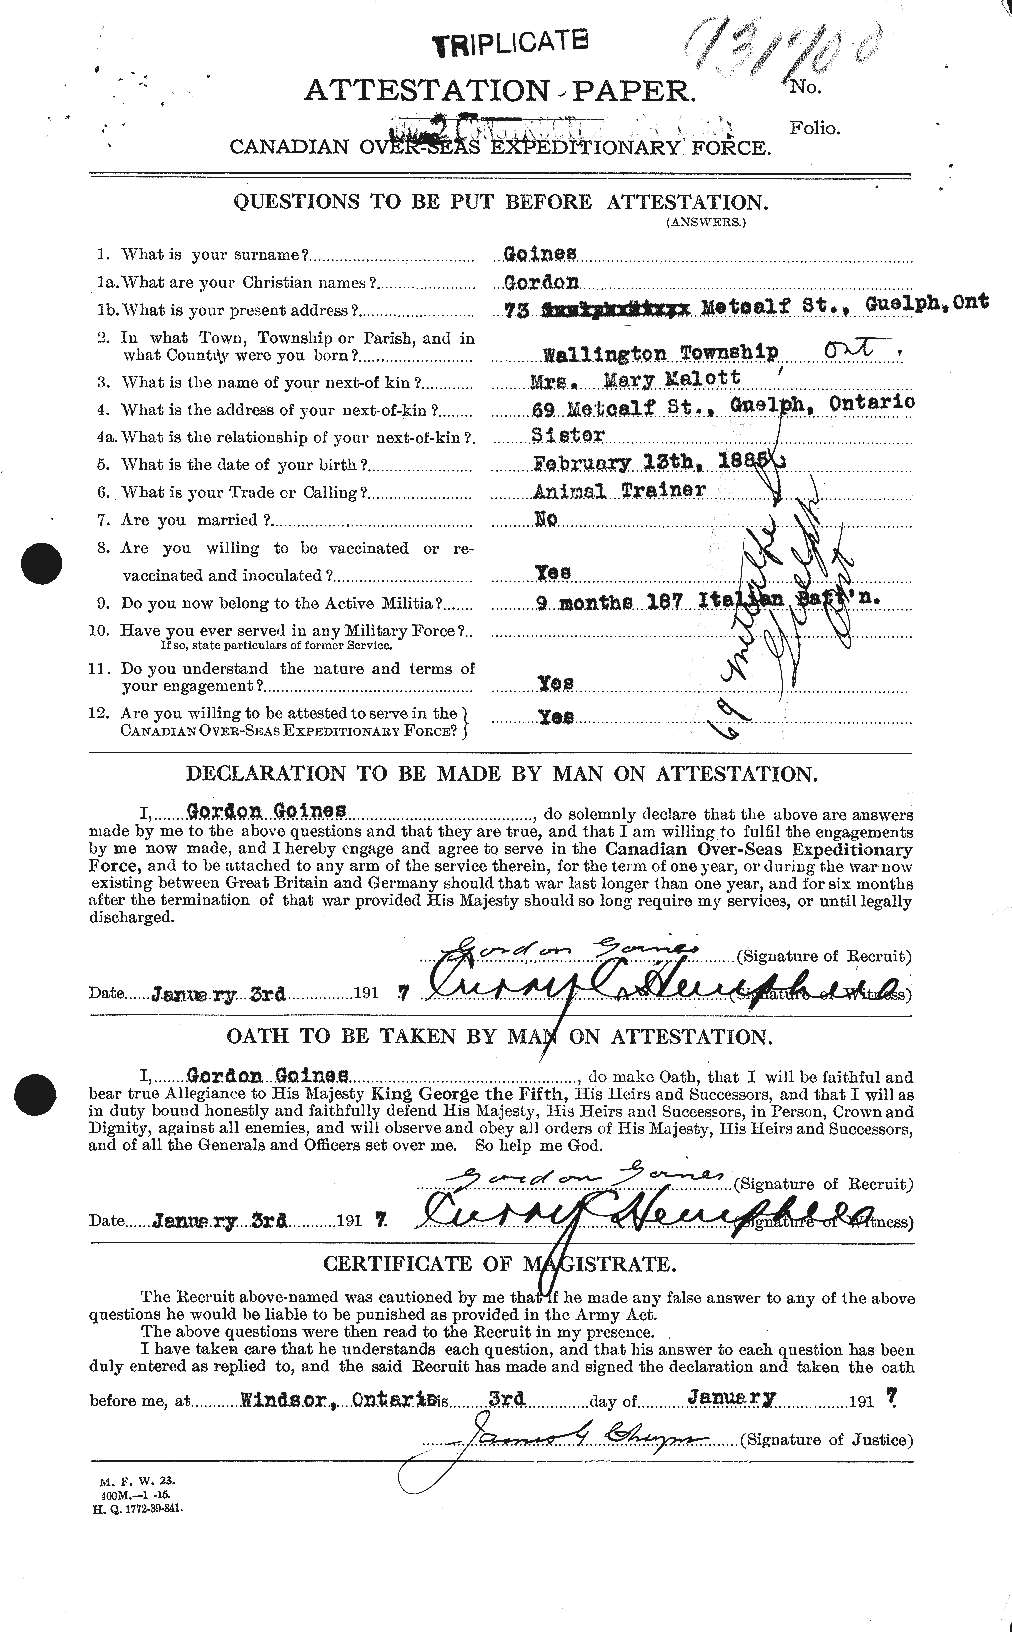 Dossiers du Personnel de la Première Guerre mondiale - CEC 352154a